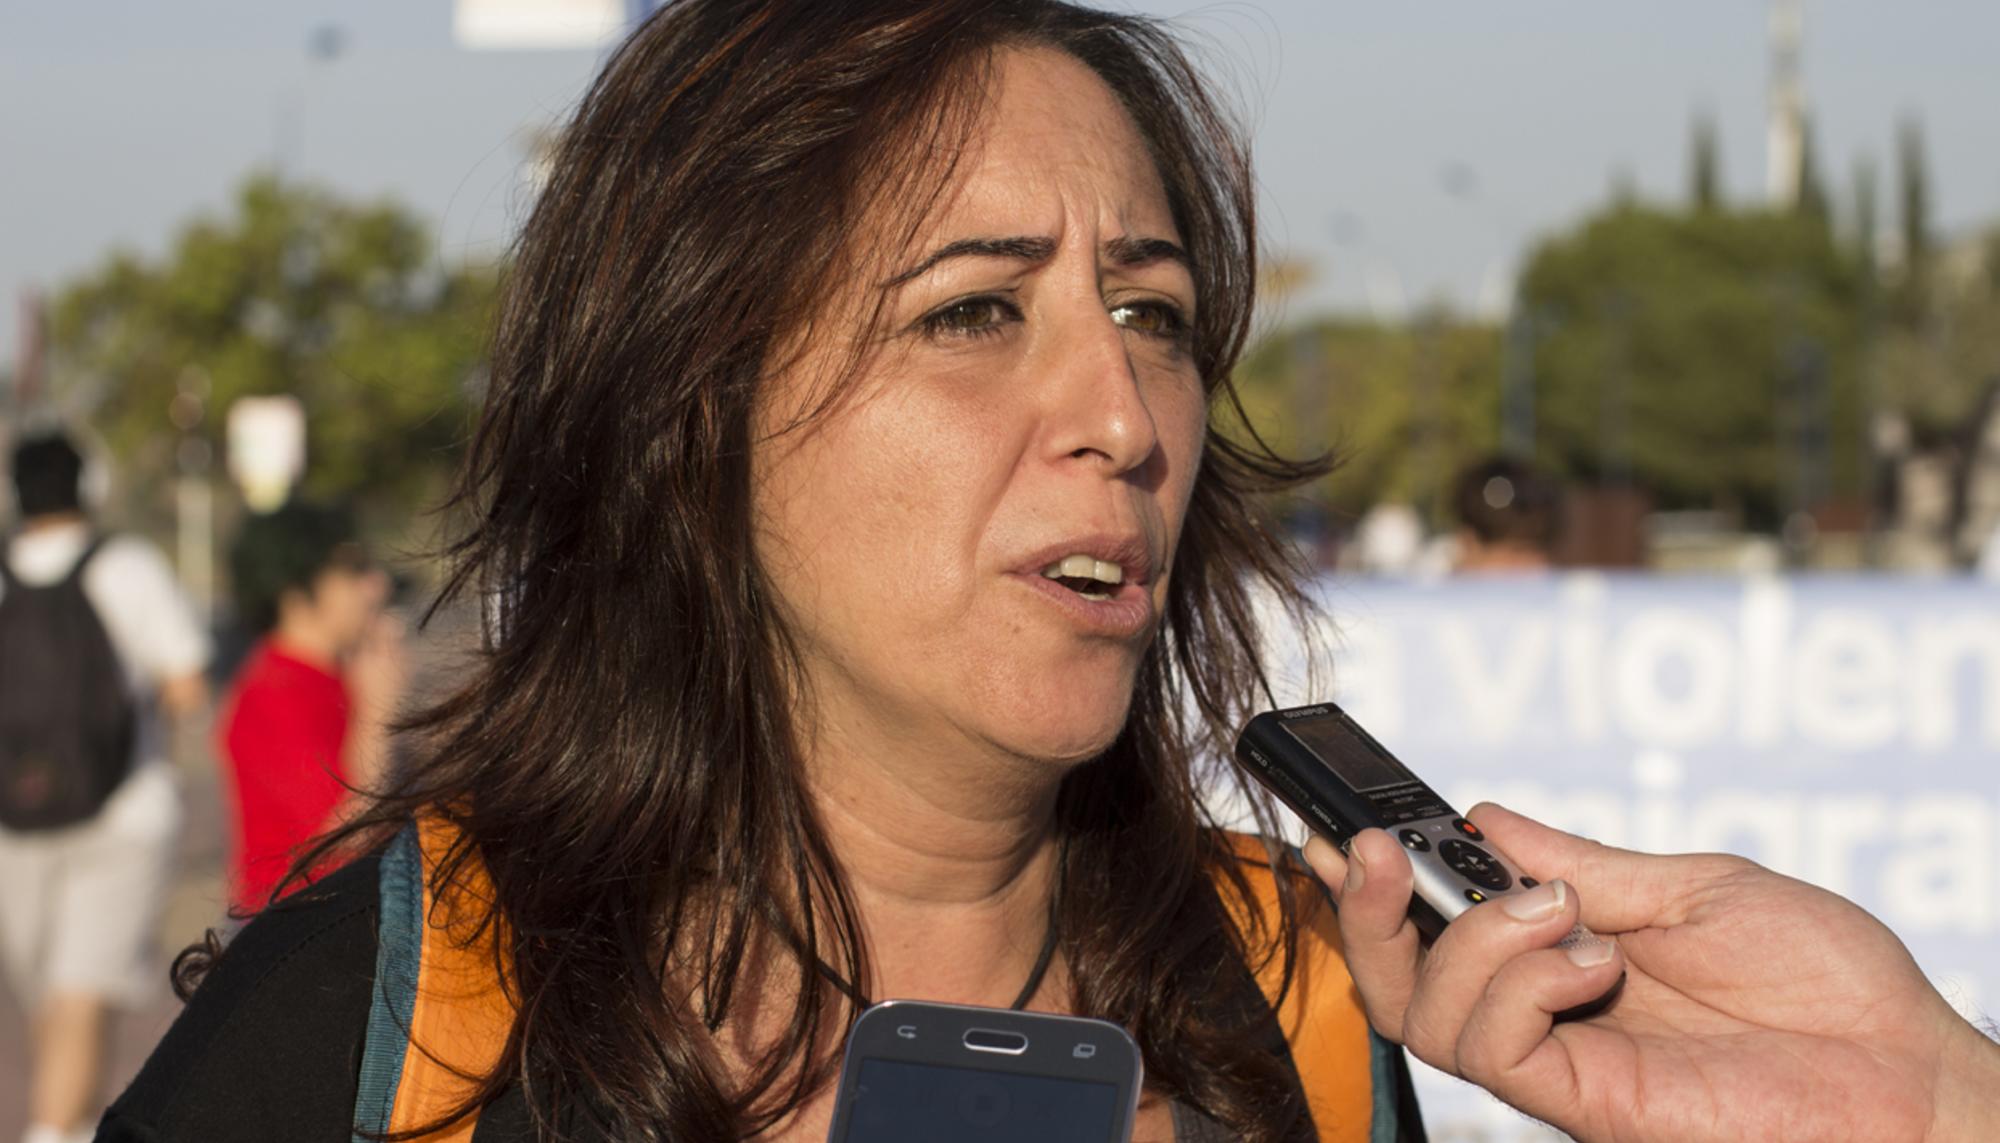 Cristina Honorato, Participa Sevilla